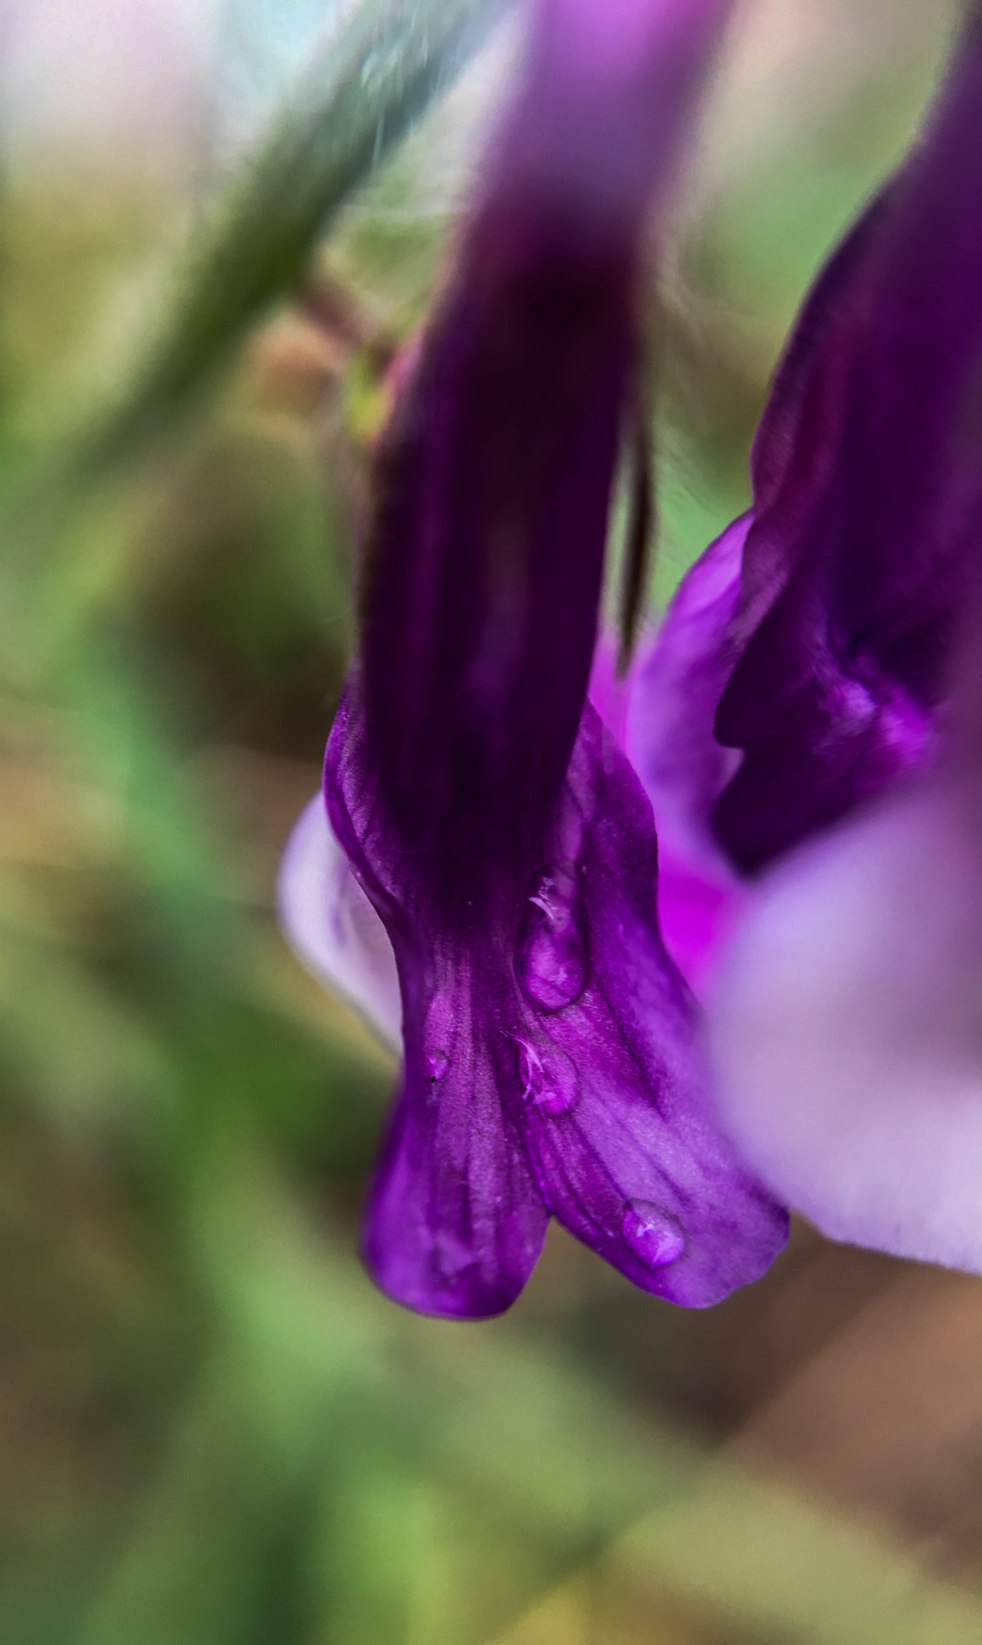 Rain on a purple flower